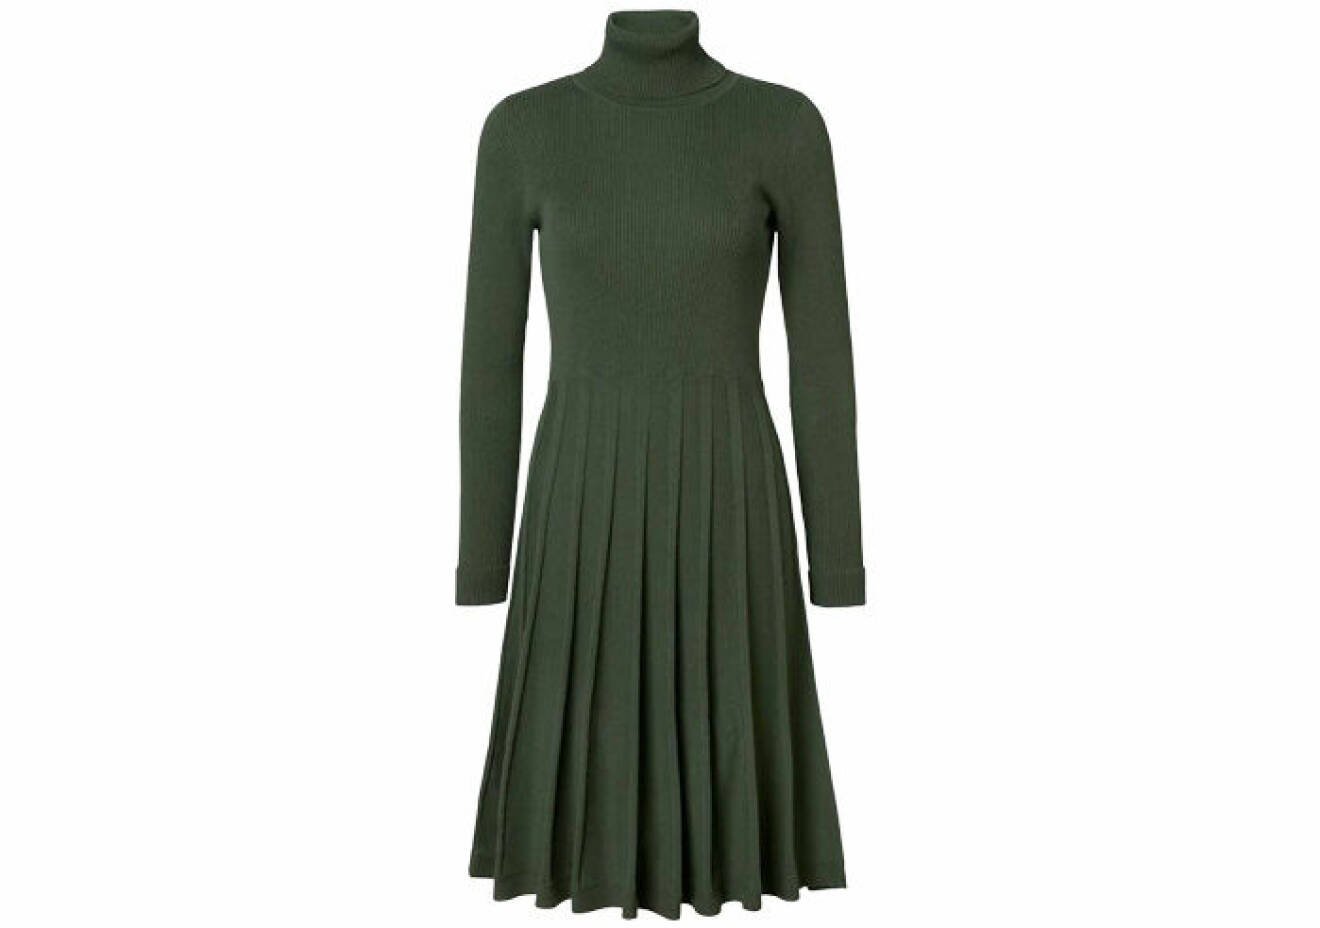 grön klänning med utställd veckad kjol och polokrage från Jumperfabriken